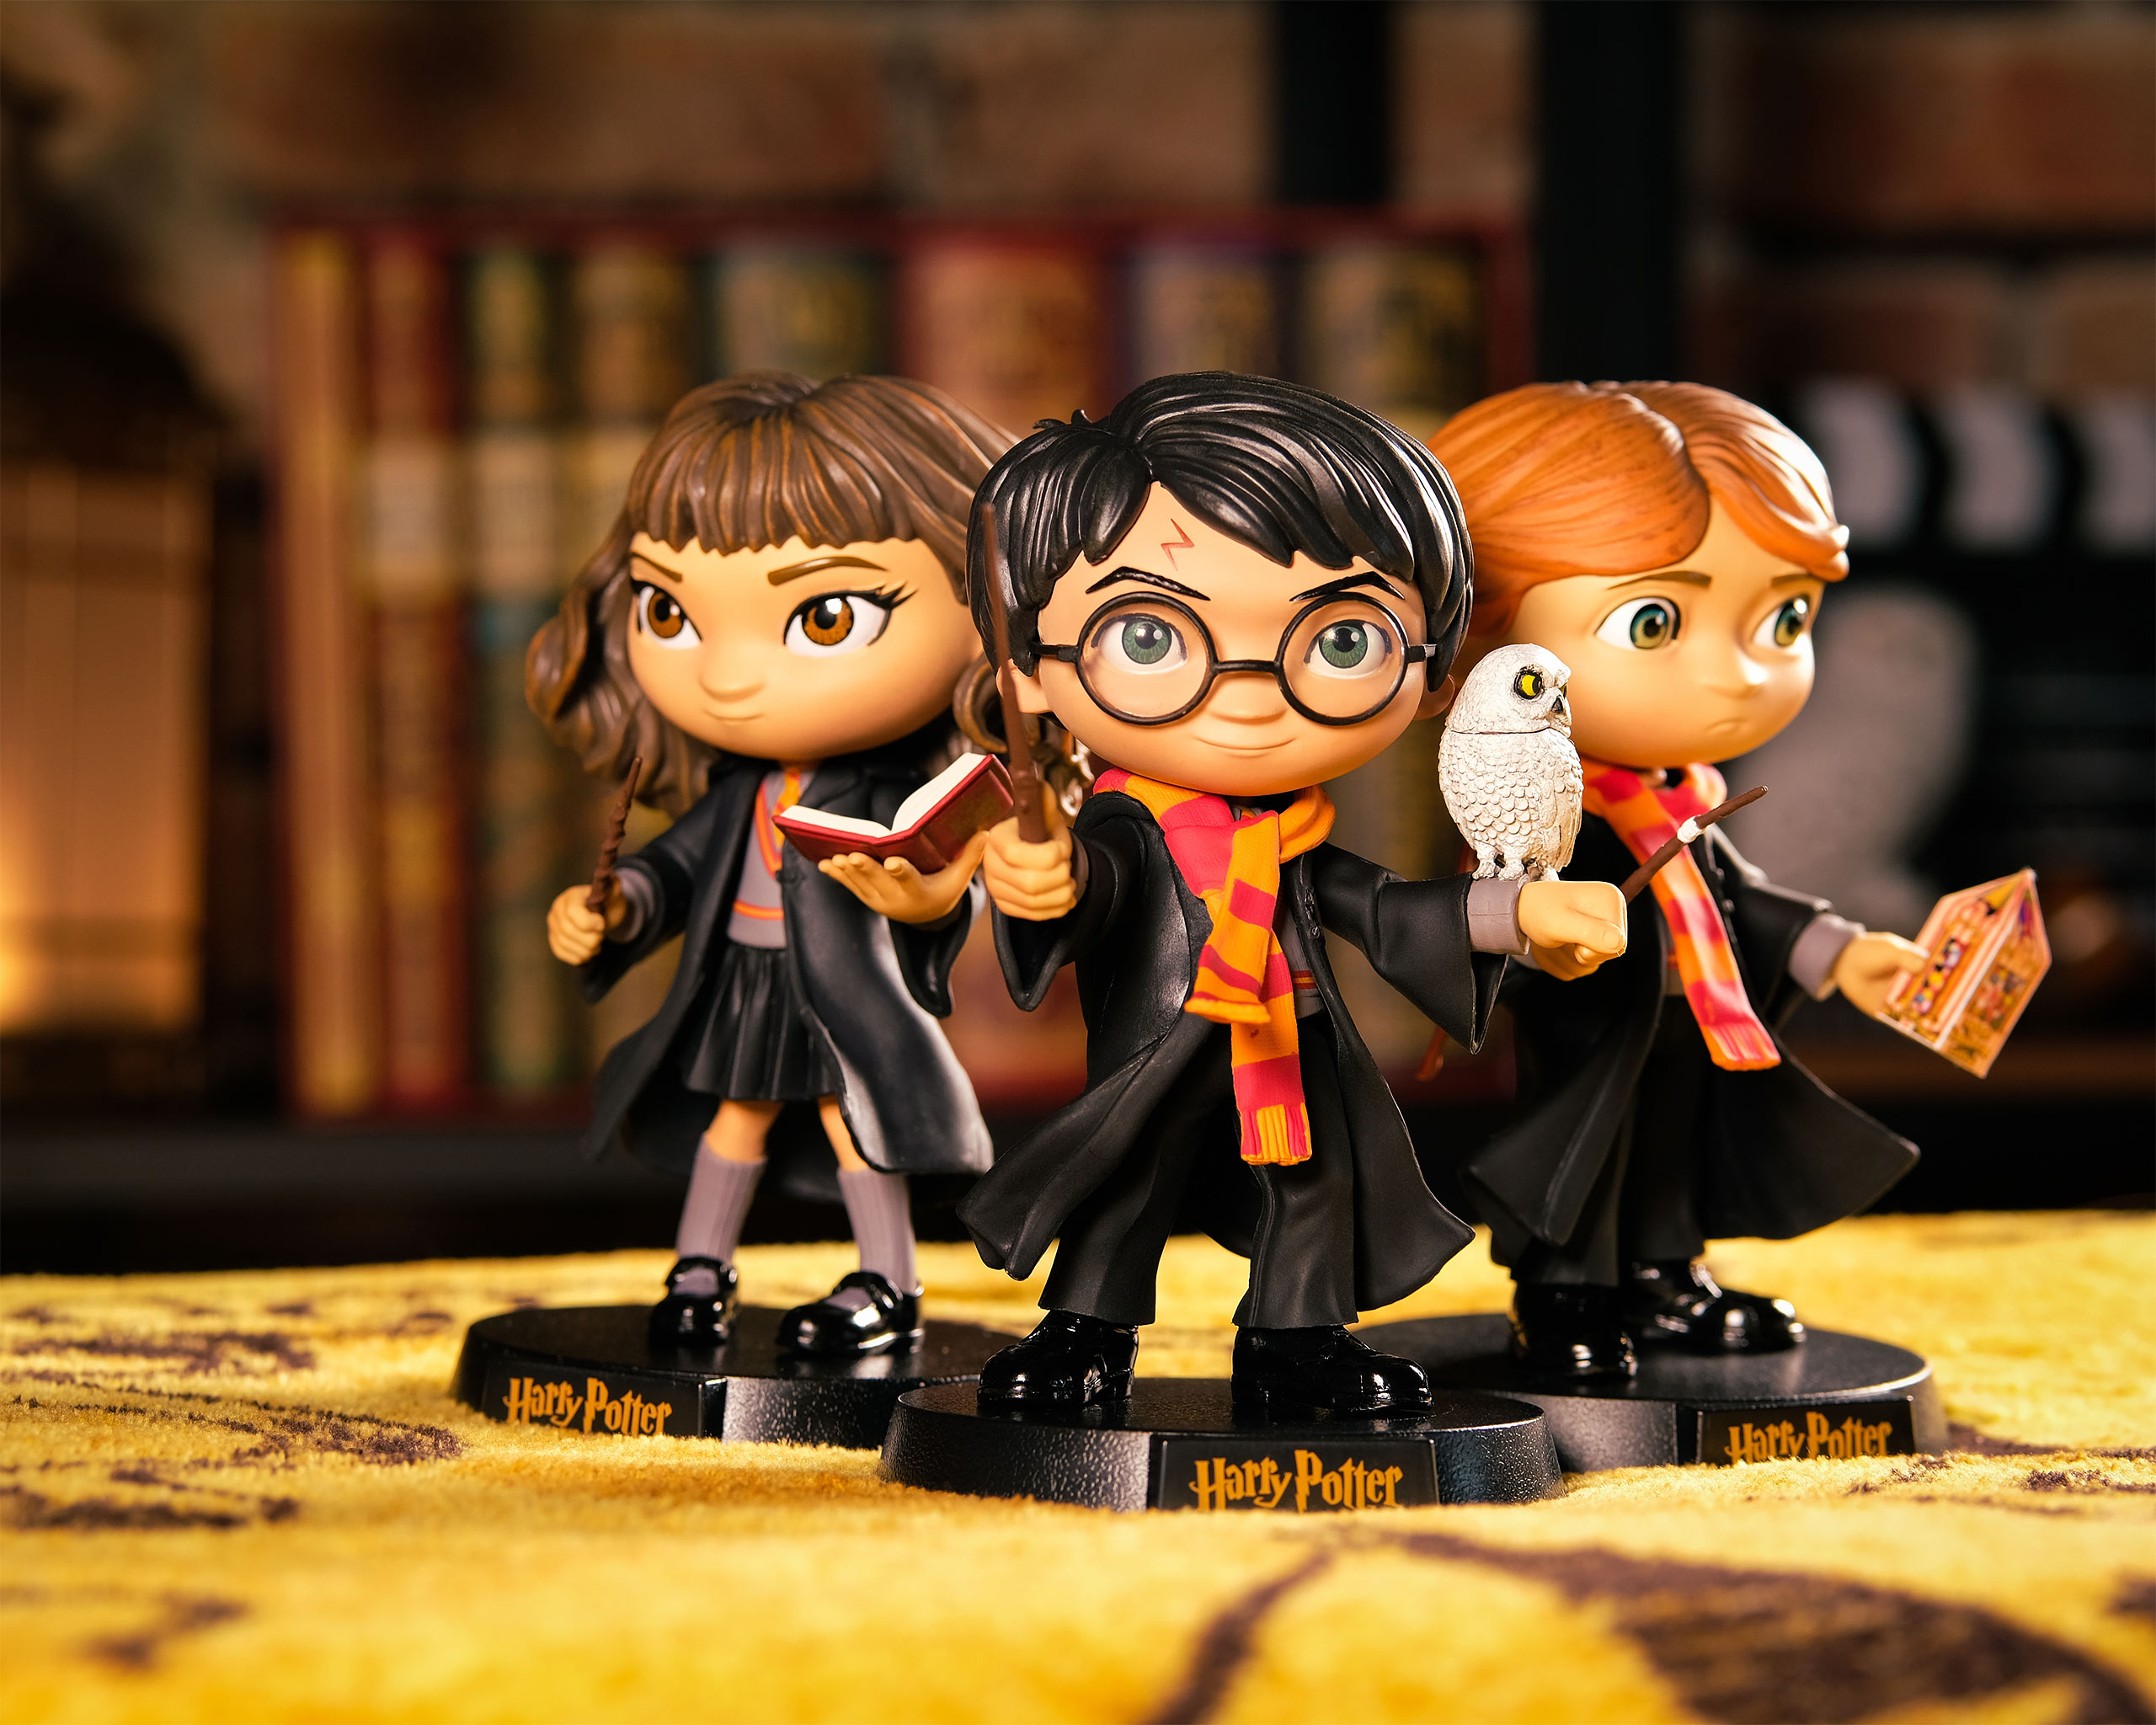 Mini figurine de Harry Potter